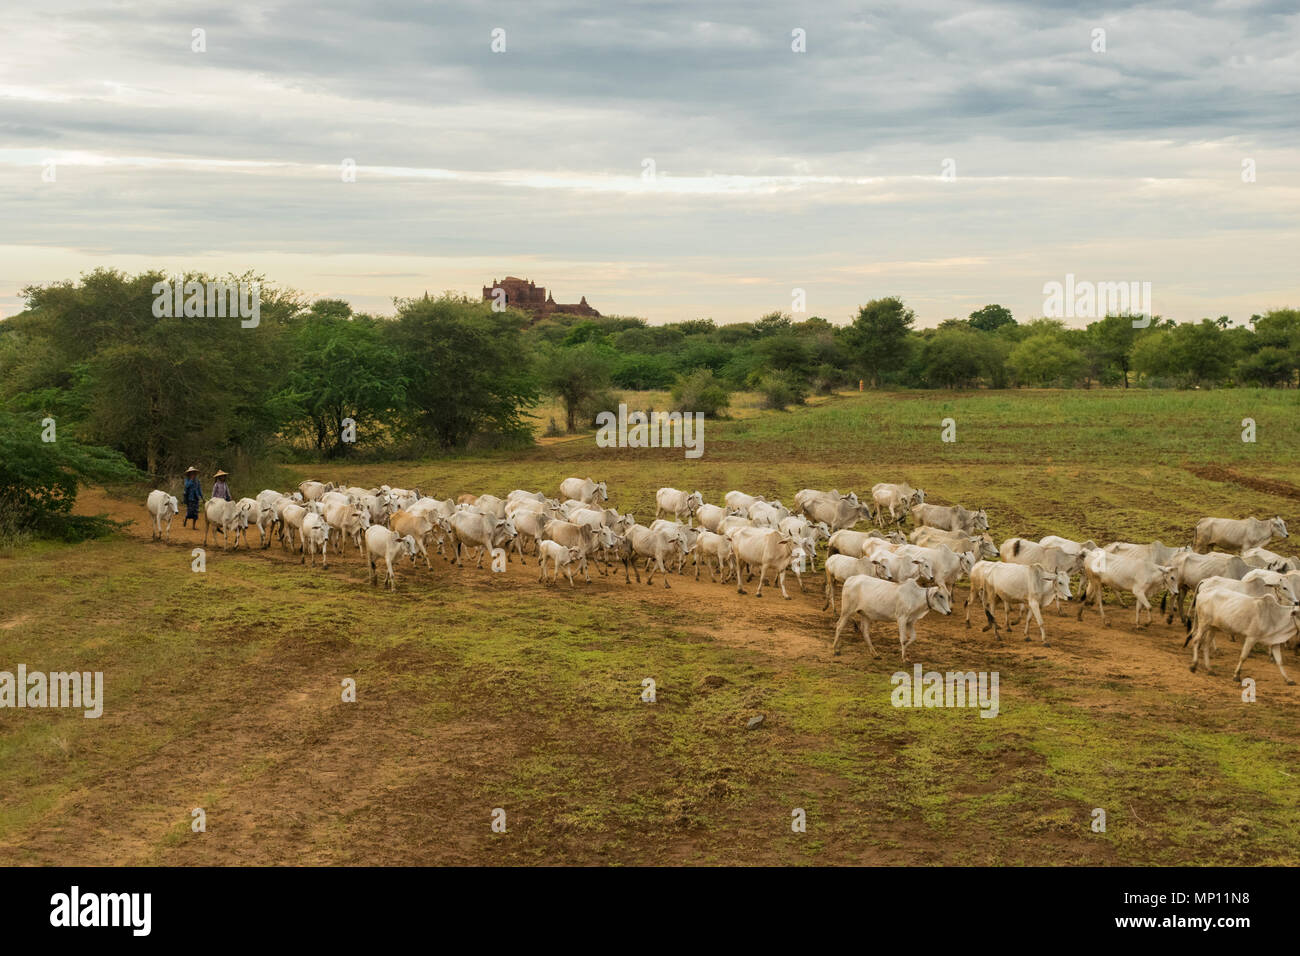 Un troupeau de bovins vaches zébu blanc marche à travers champs dans les régions rurales de Bagan, Myanmar, Birmanie, Asie du sud-est, pendant le coucher du soleil. sereine pacifique L'agriculture asiatique Banque D'Images